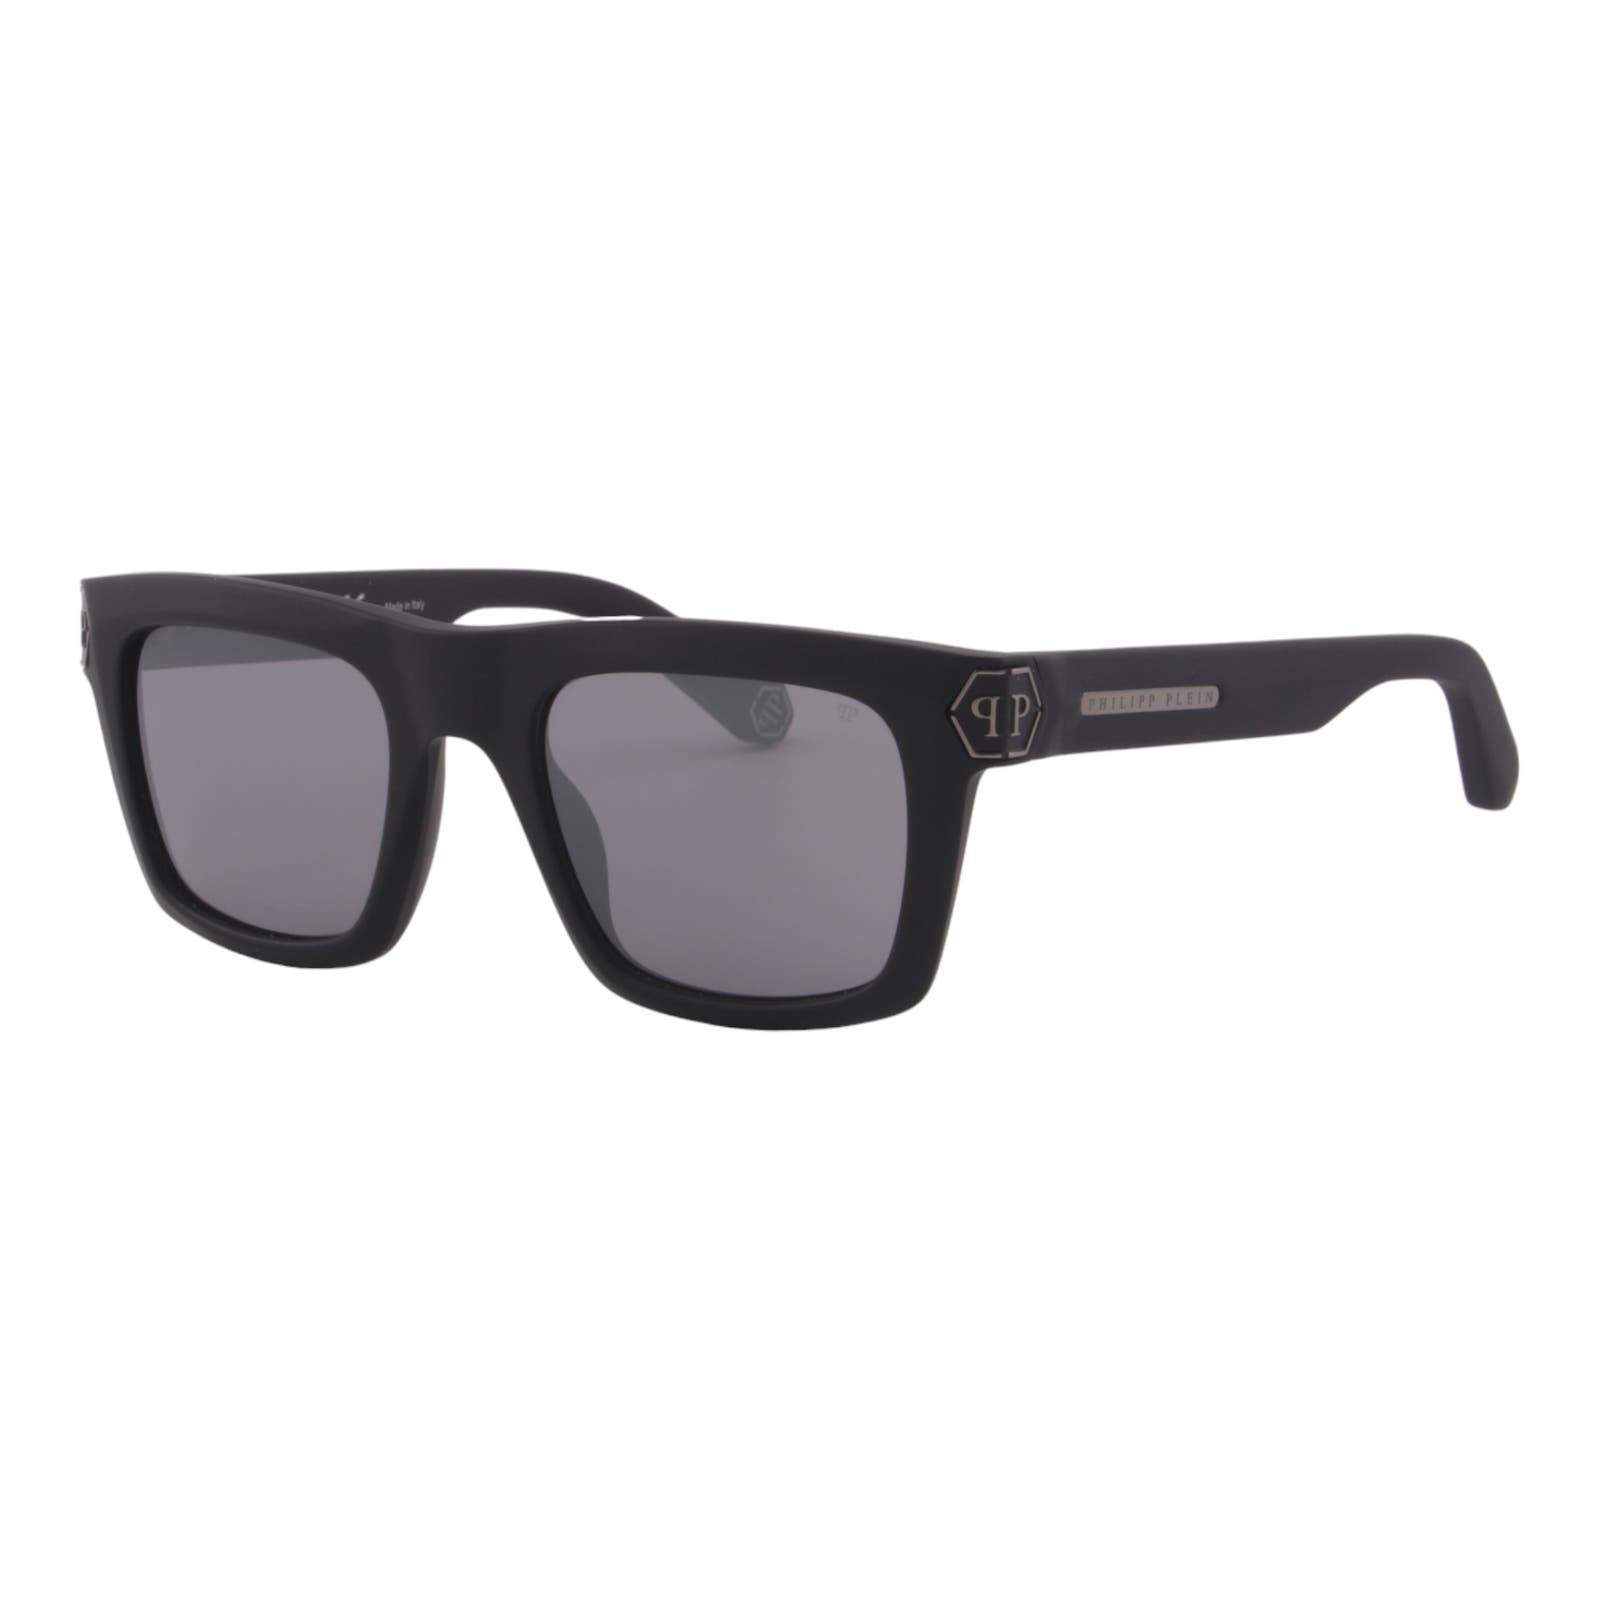 Men Square Sunglasses SPP043M-703X Matte Black Frame & Mirrored Lens